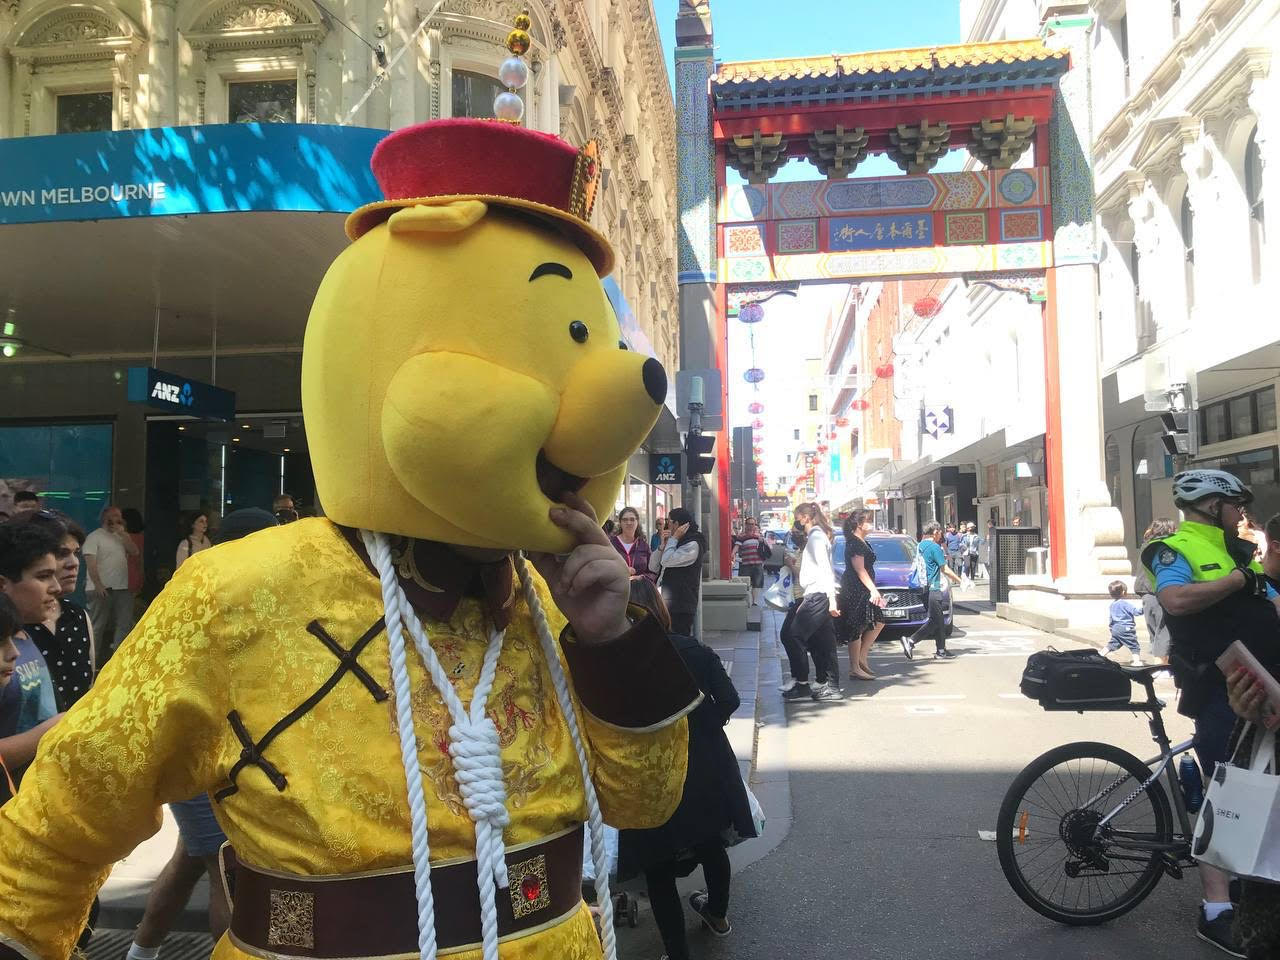 Aaron, con su disfraz de Winnie the Pooh, participa en una protesta a favor de la democracia en Chinatown, Melbourne, Australia.